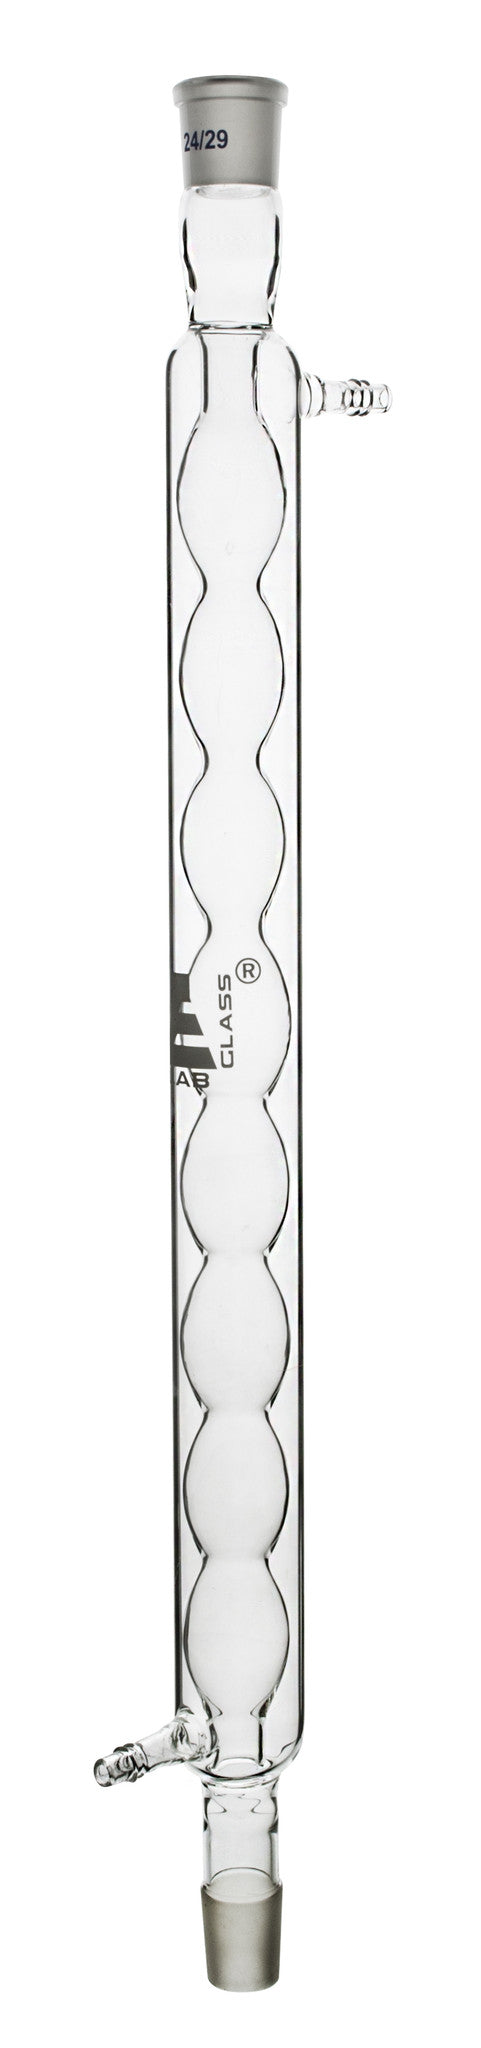 冷凝器- Allihn灯泡，插座尺寸14/23和锥尺寸14/23，有效长度16mm